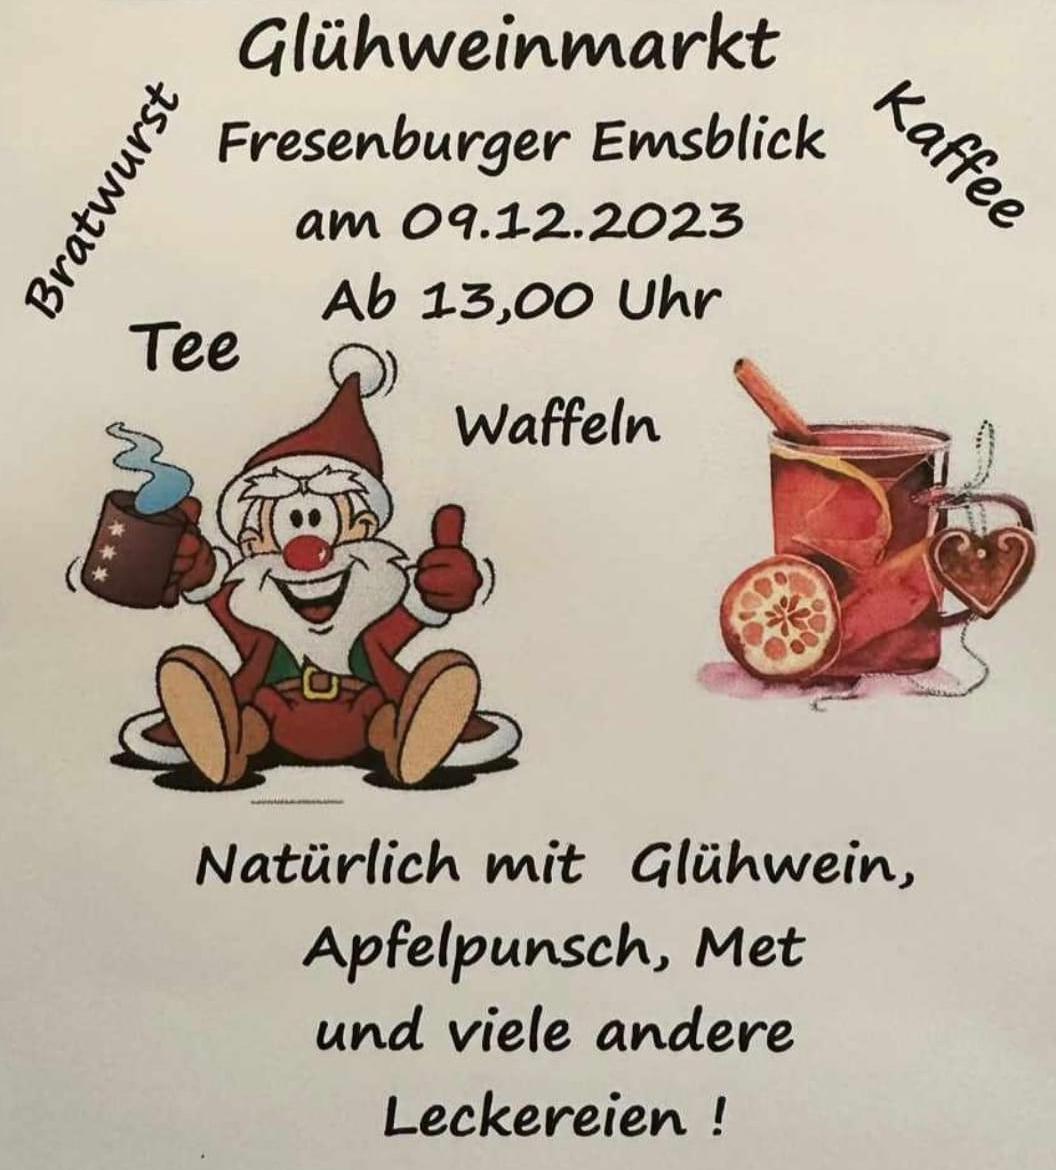 Fresenburger Emsblick: Glühweinmarkt